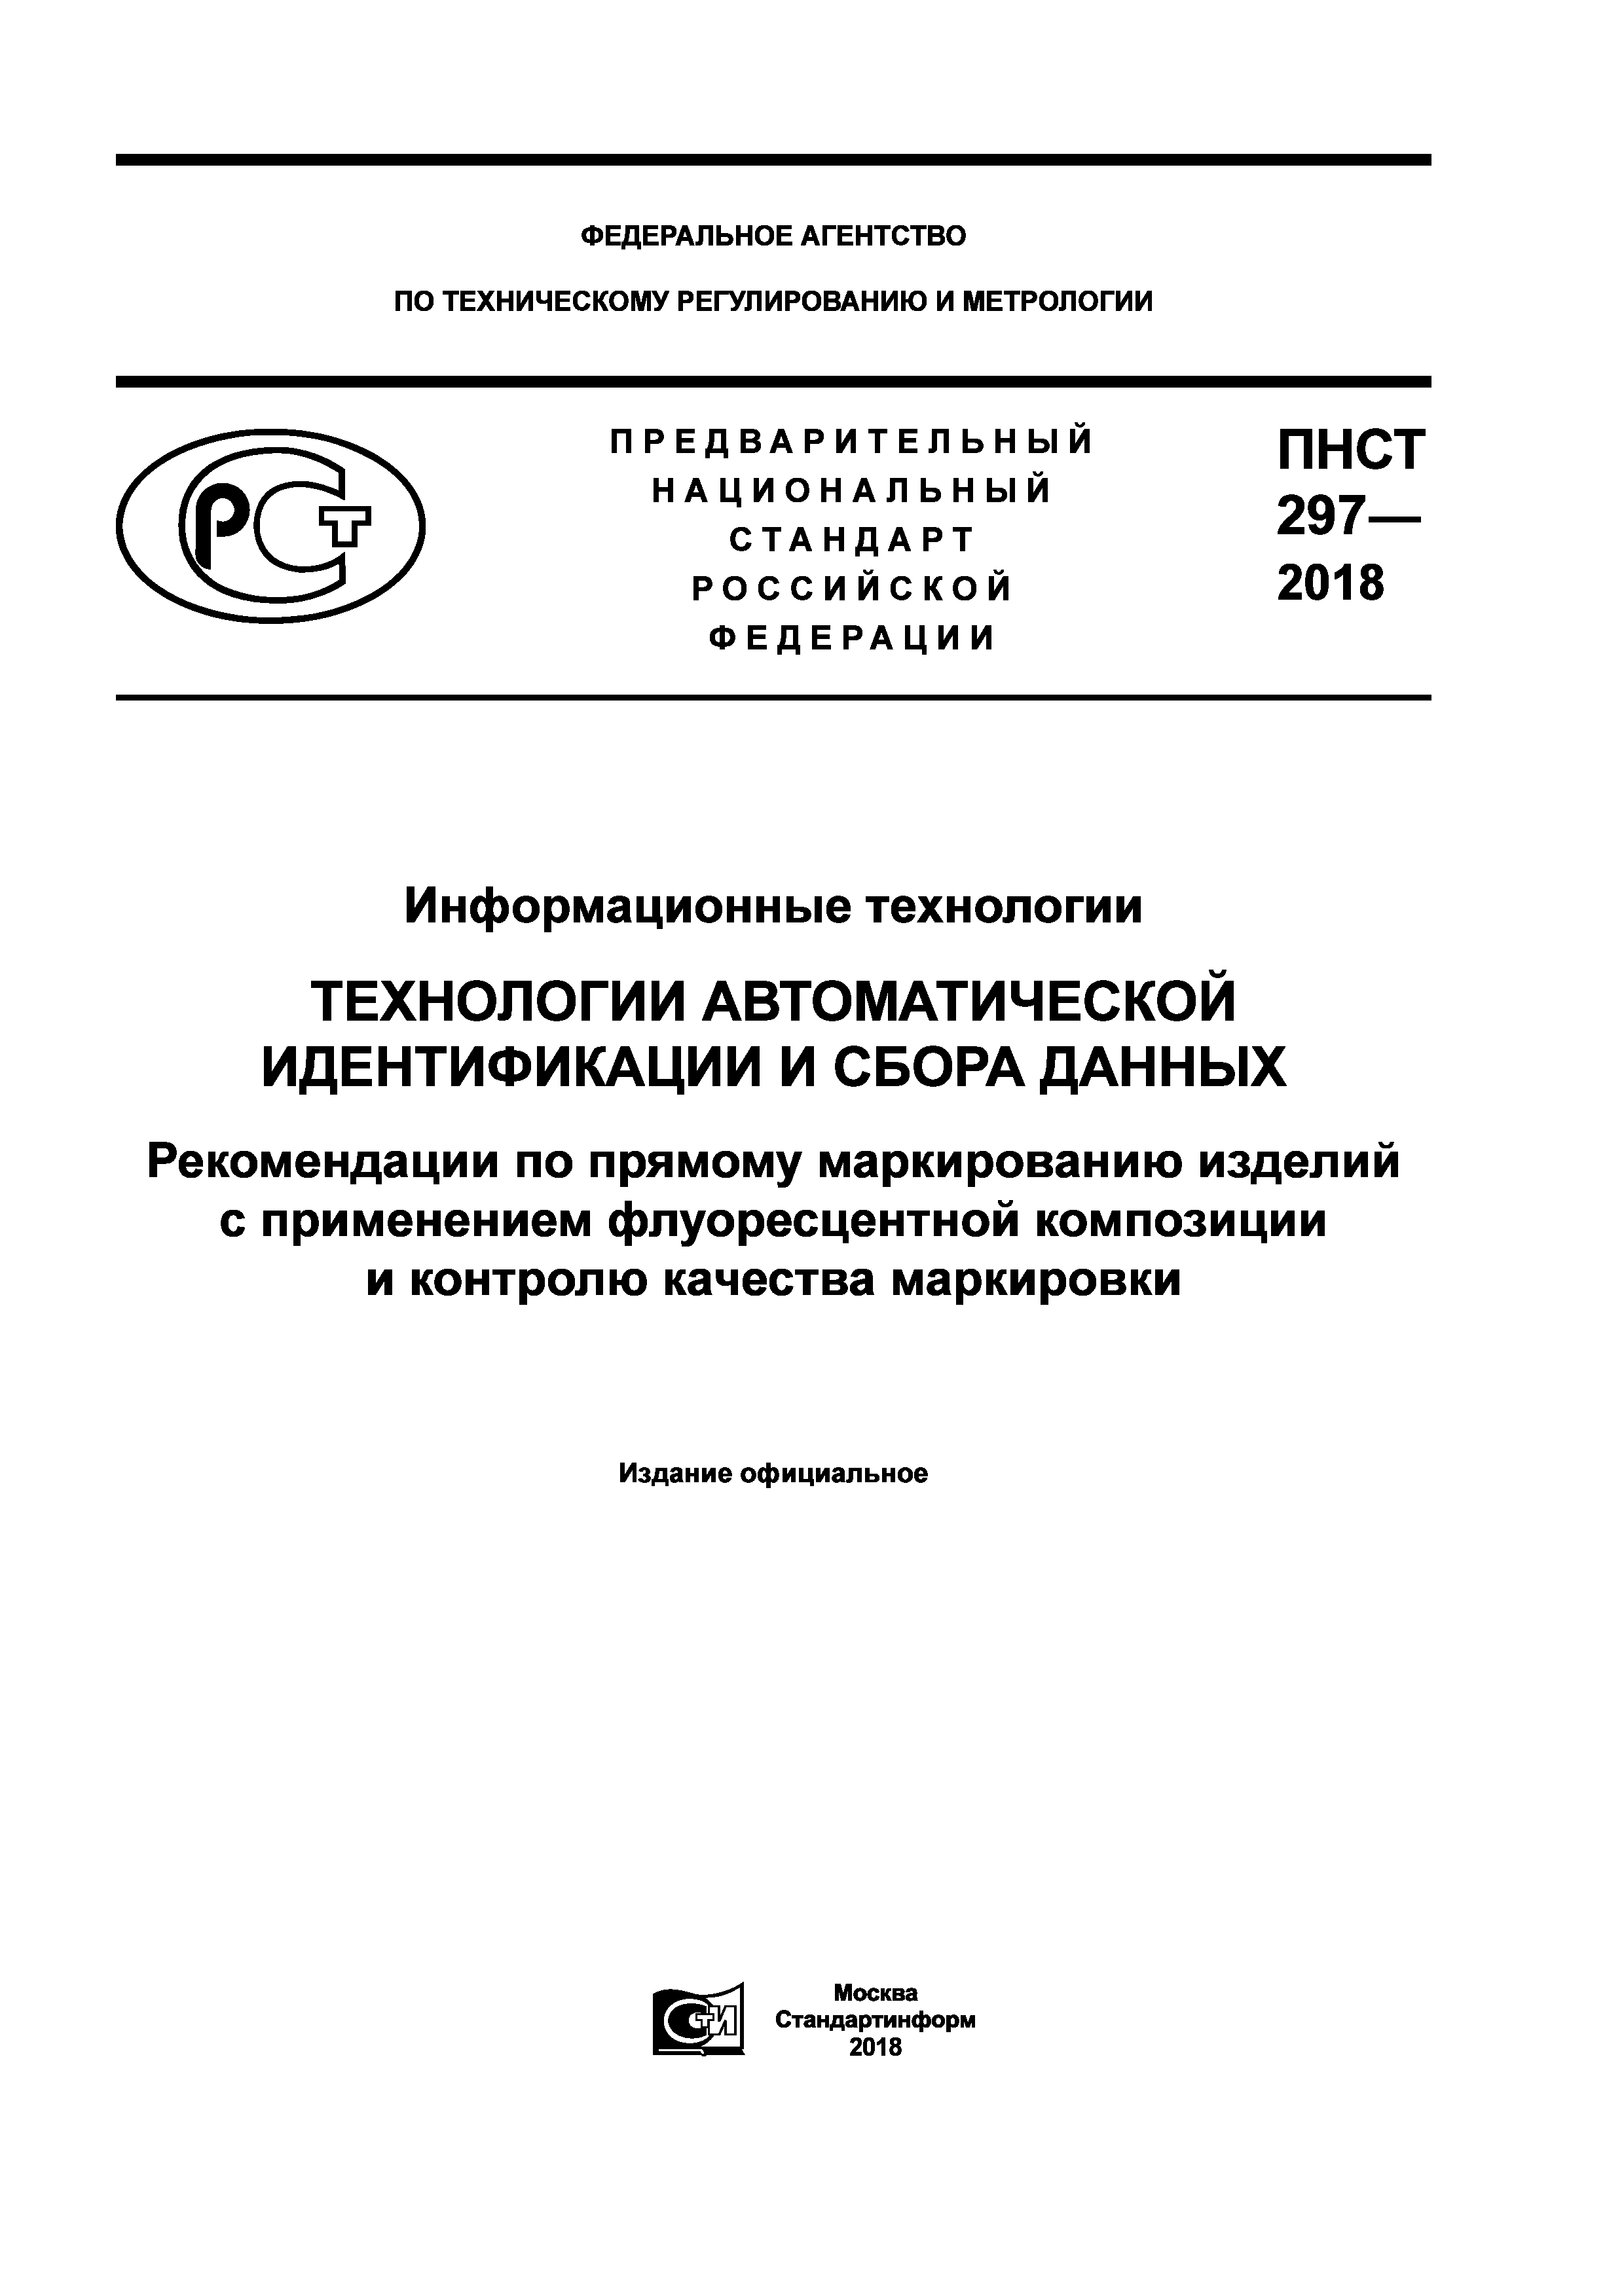 ПНСТ 297-2018